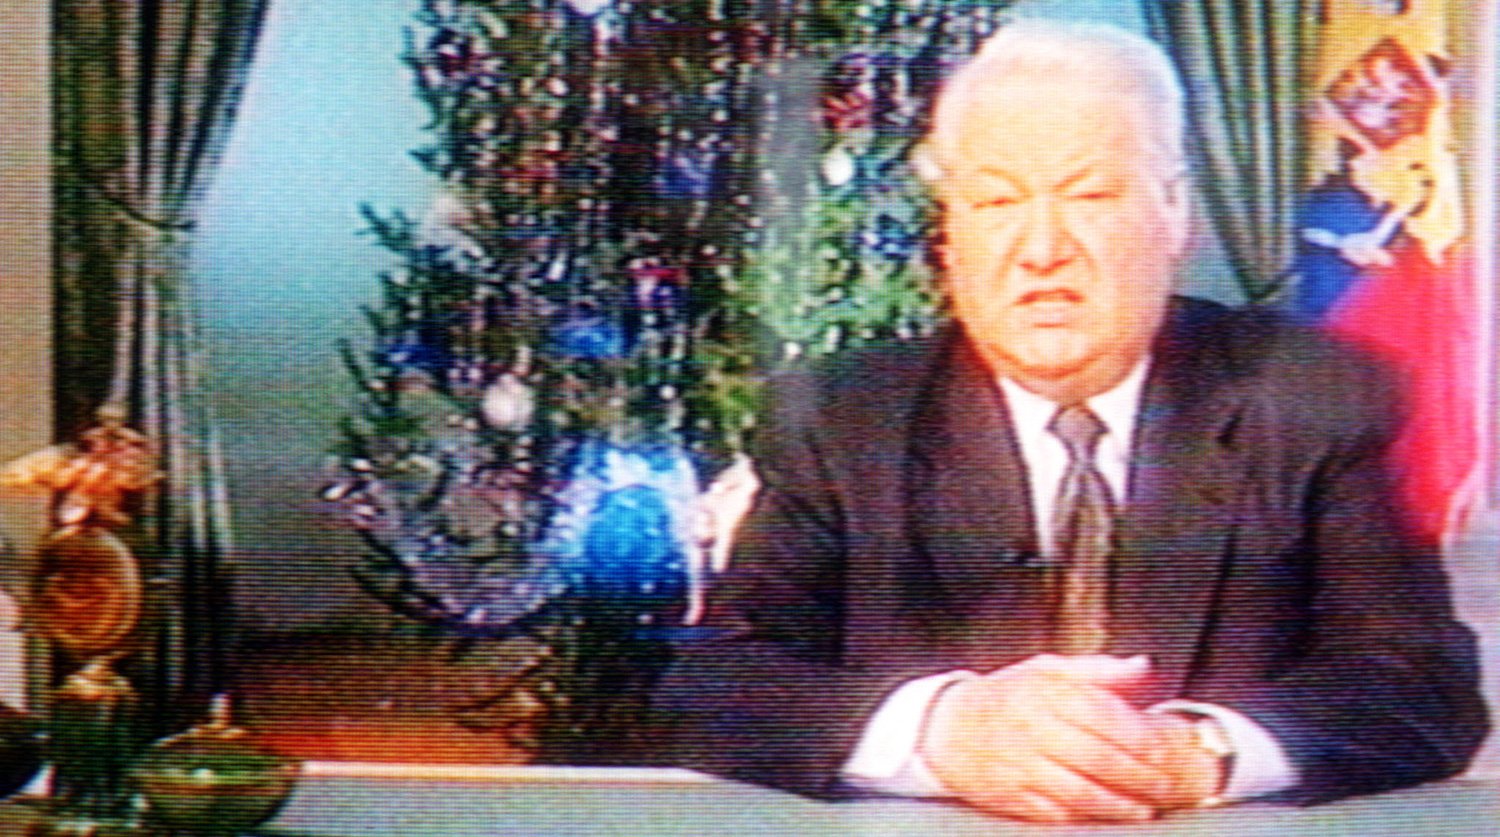 Ельцин 31 декабря 1999. Новогодняя речь Ельцина 1999. Ельцин новогоднее обращение 1999. Новогоднее обращение Ельцина 1997. Ельцин у елки.